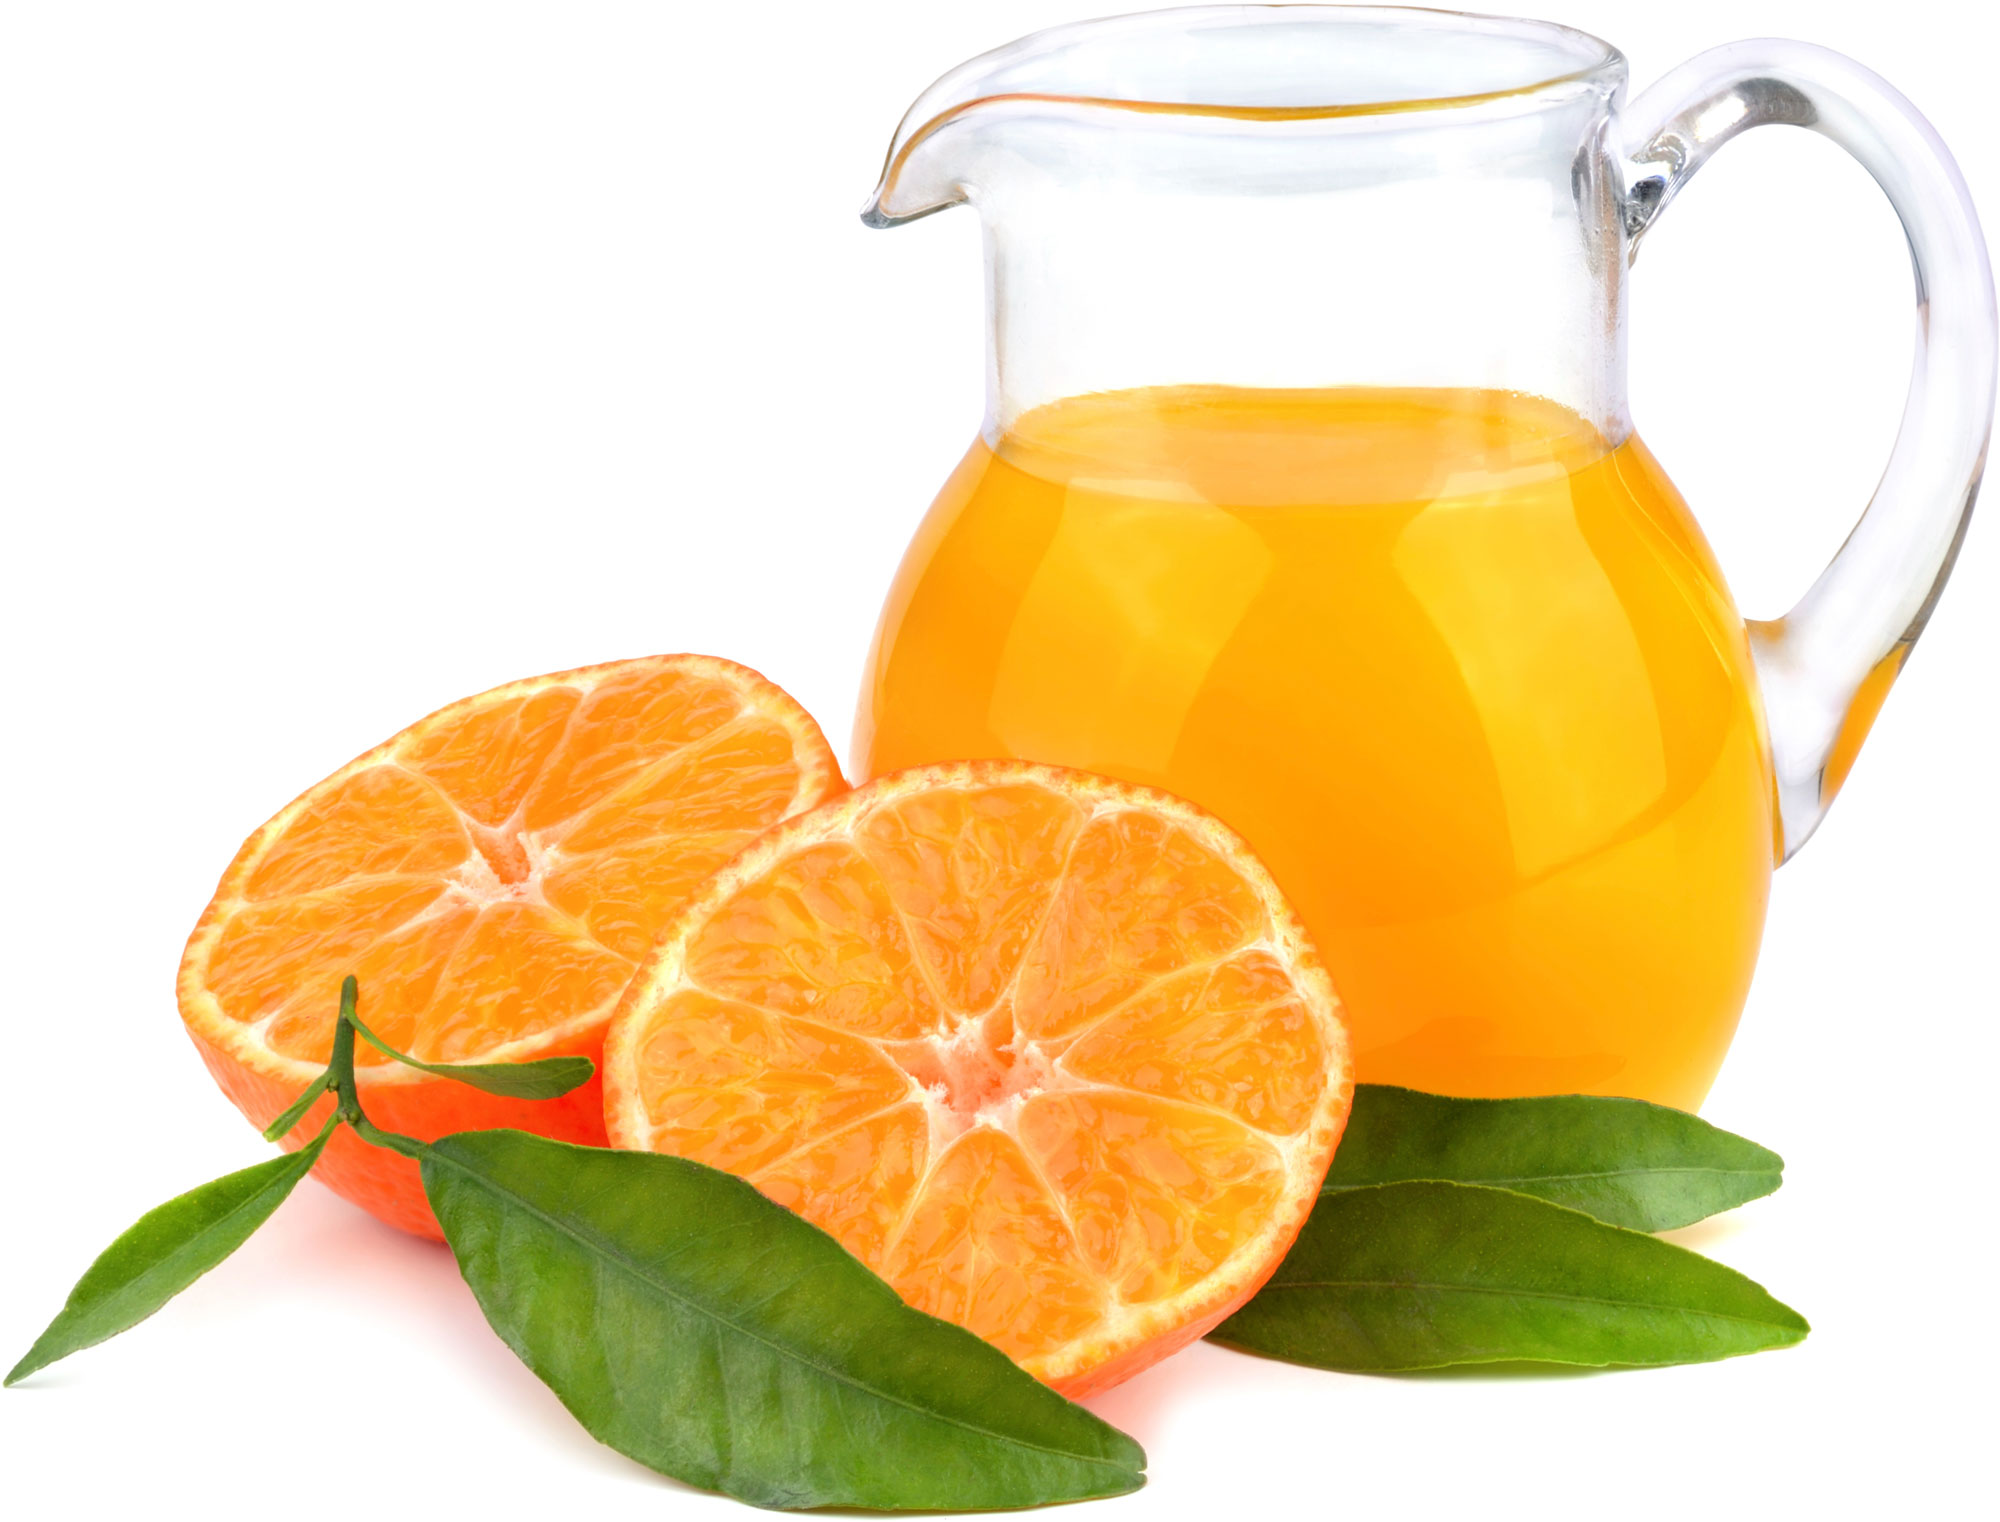 oranges and orange juice